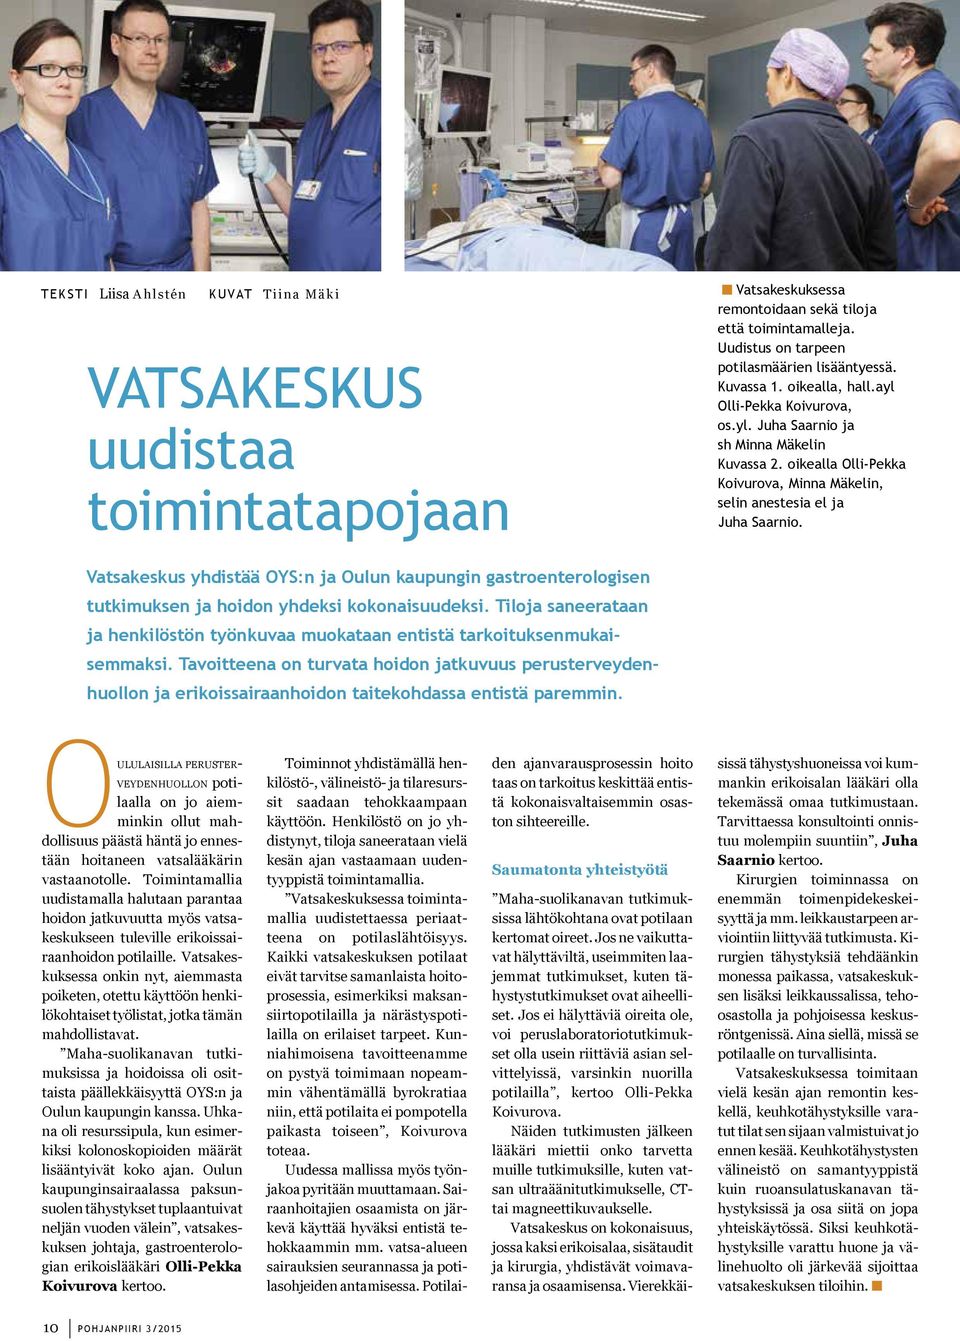 Vatsakeskus yhdistää OYS:n ja Oulun kaupungin gastroenterologisen tutkimuksen ja hoidon yhdeksi kokonaisuudeksi.